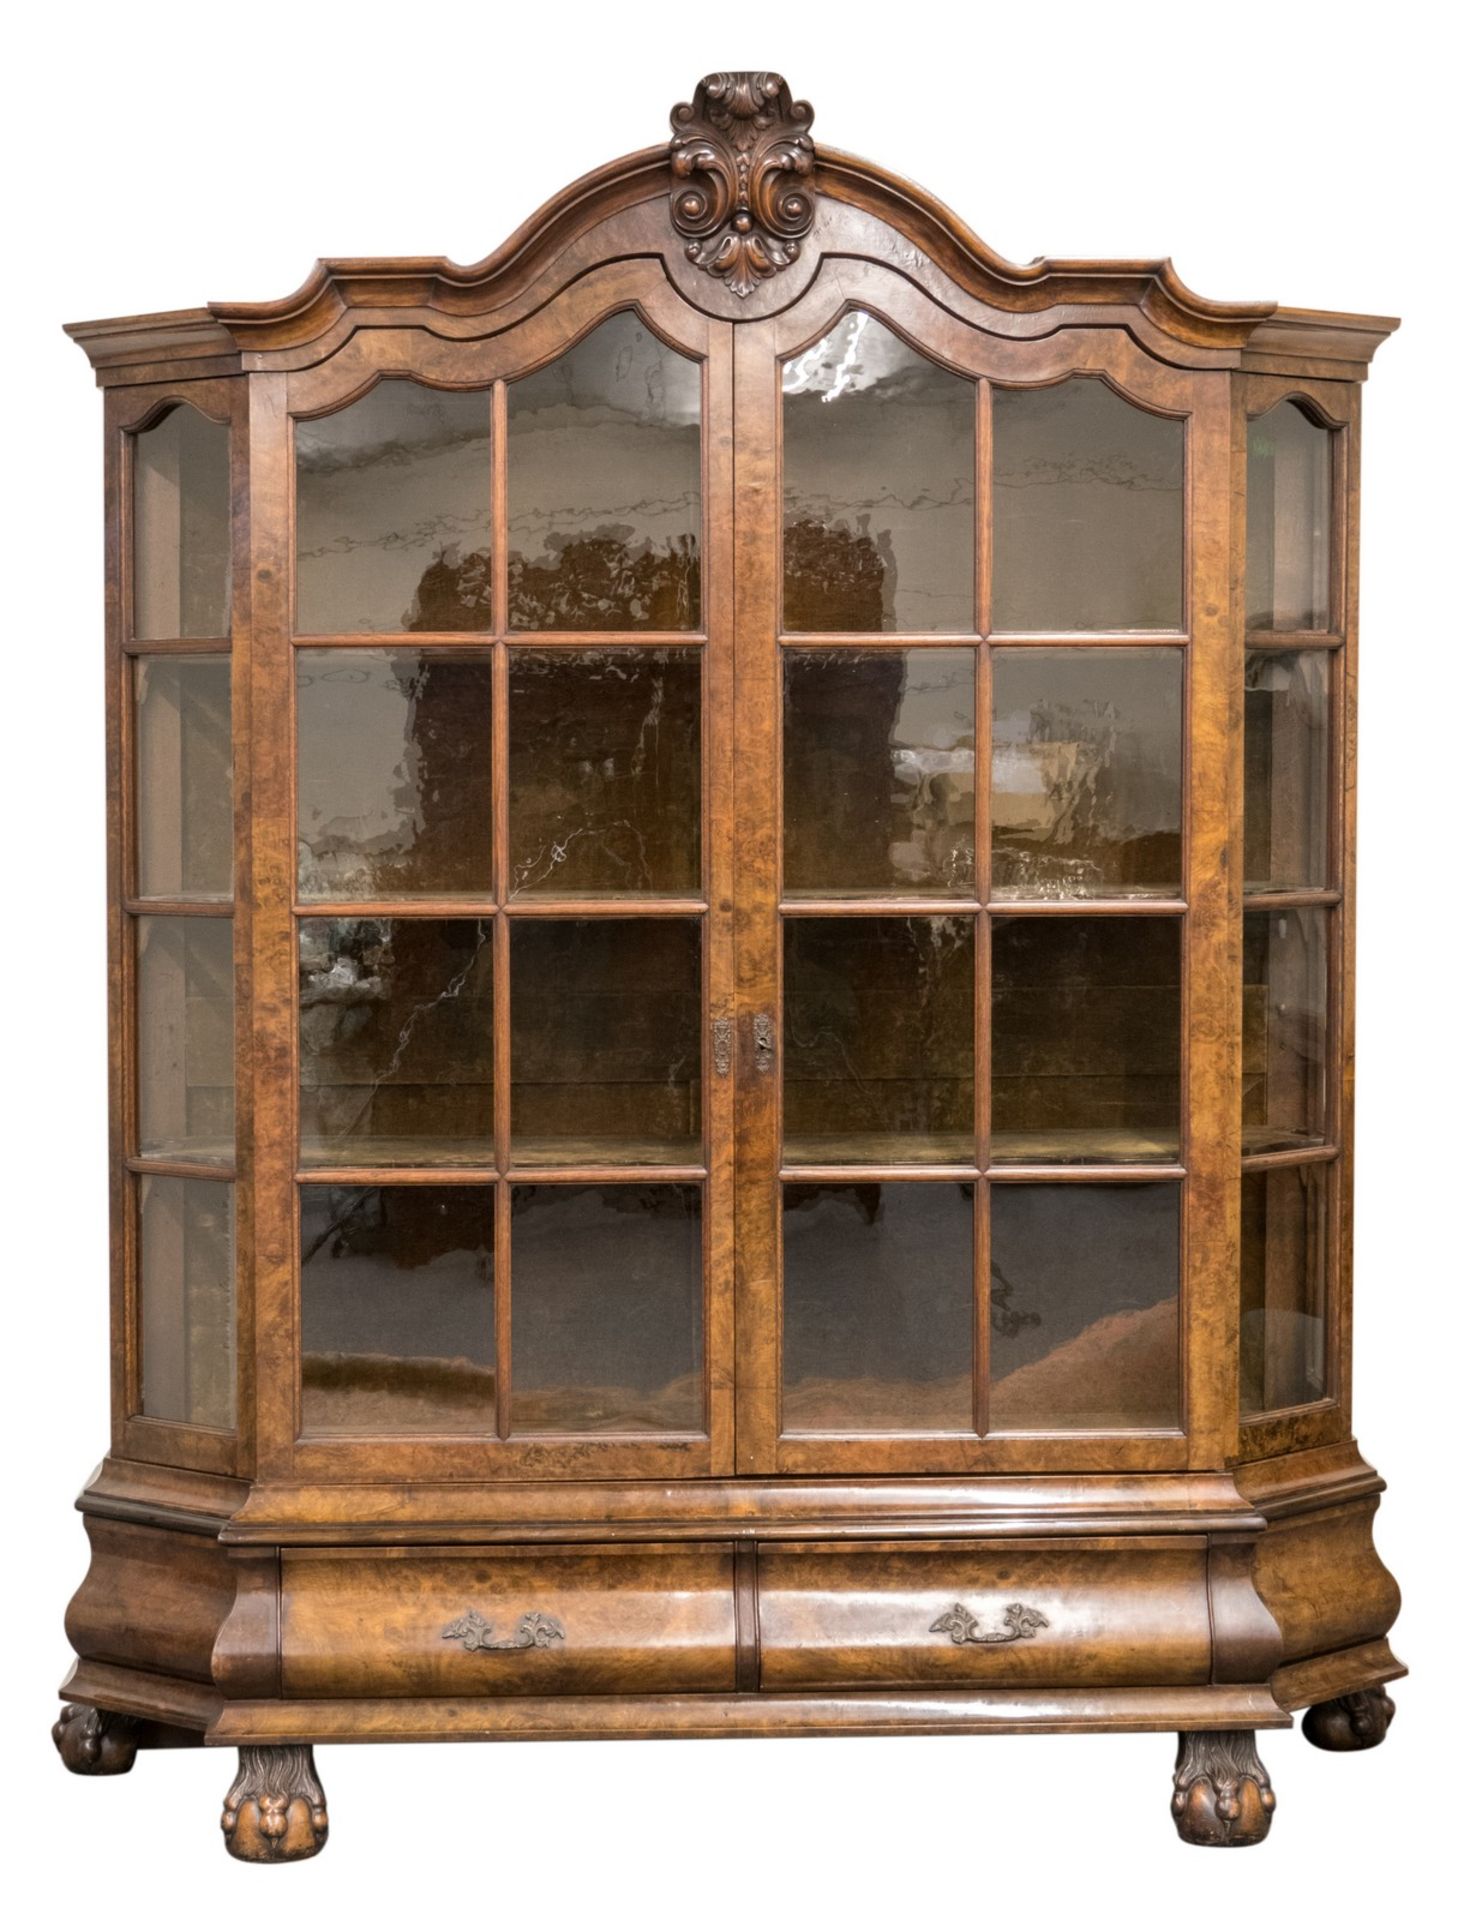 A 19thC Dutch walnut and burr veneered cabinet, claw shaped feet, H 234 - W 189 - D 64 cm